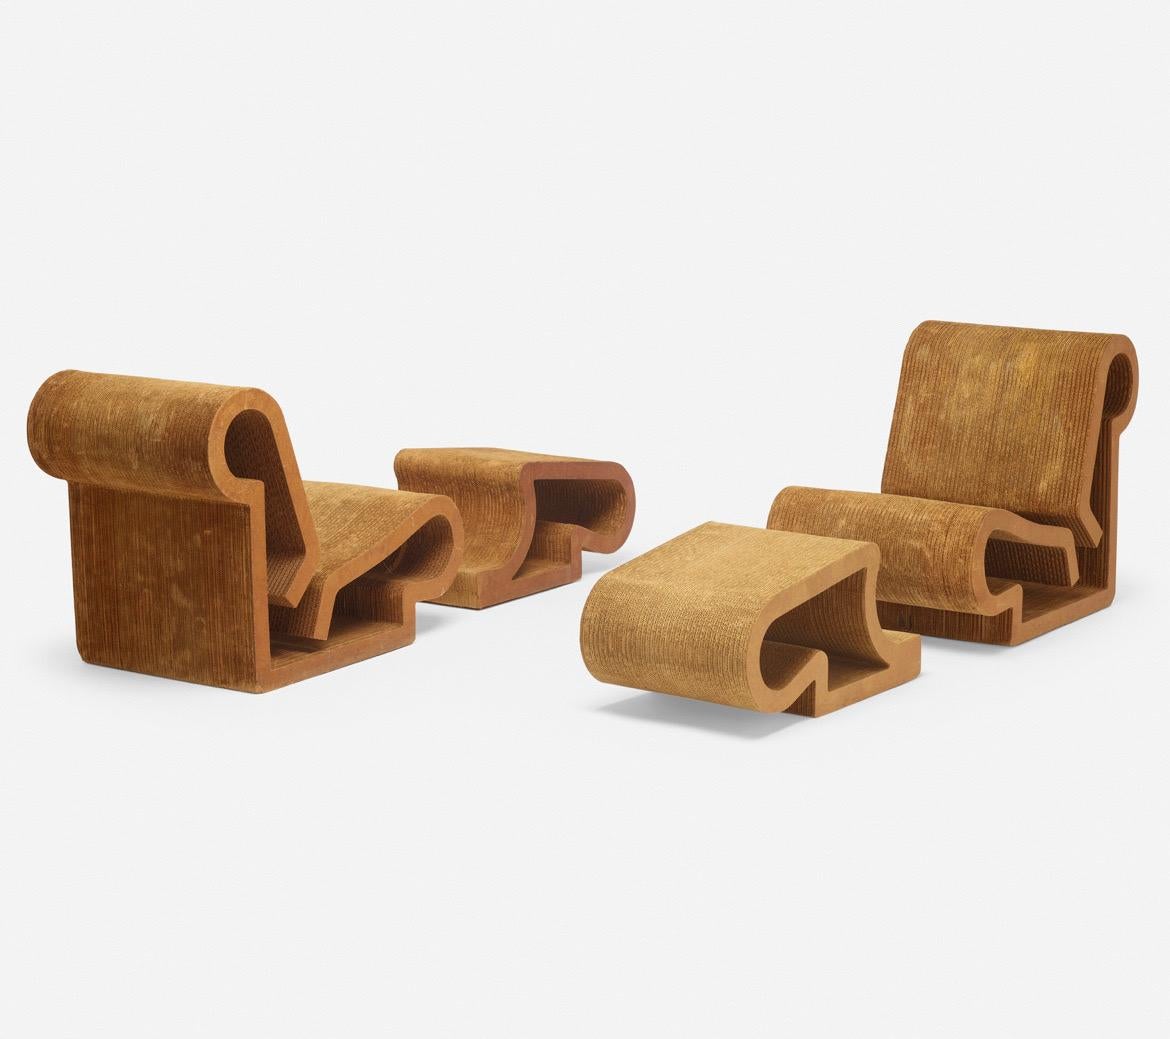 Paire de chaises et d'ottomans easy Edges de Frank Gehry. Easy Edges, Inc. Canada/USA, 1972. Carton laminé, masonite. Chaise : 29¼ H × 23¼ W × 39 D in, ottoman : 14¾ H × 17¾ W × 30 D in (37 %).
Application d'une étiquette de fabricant de papier sur